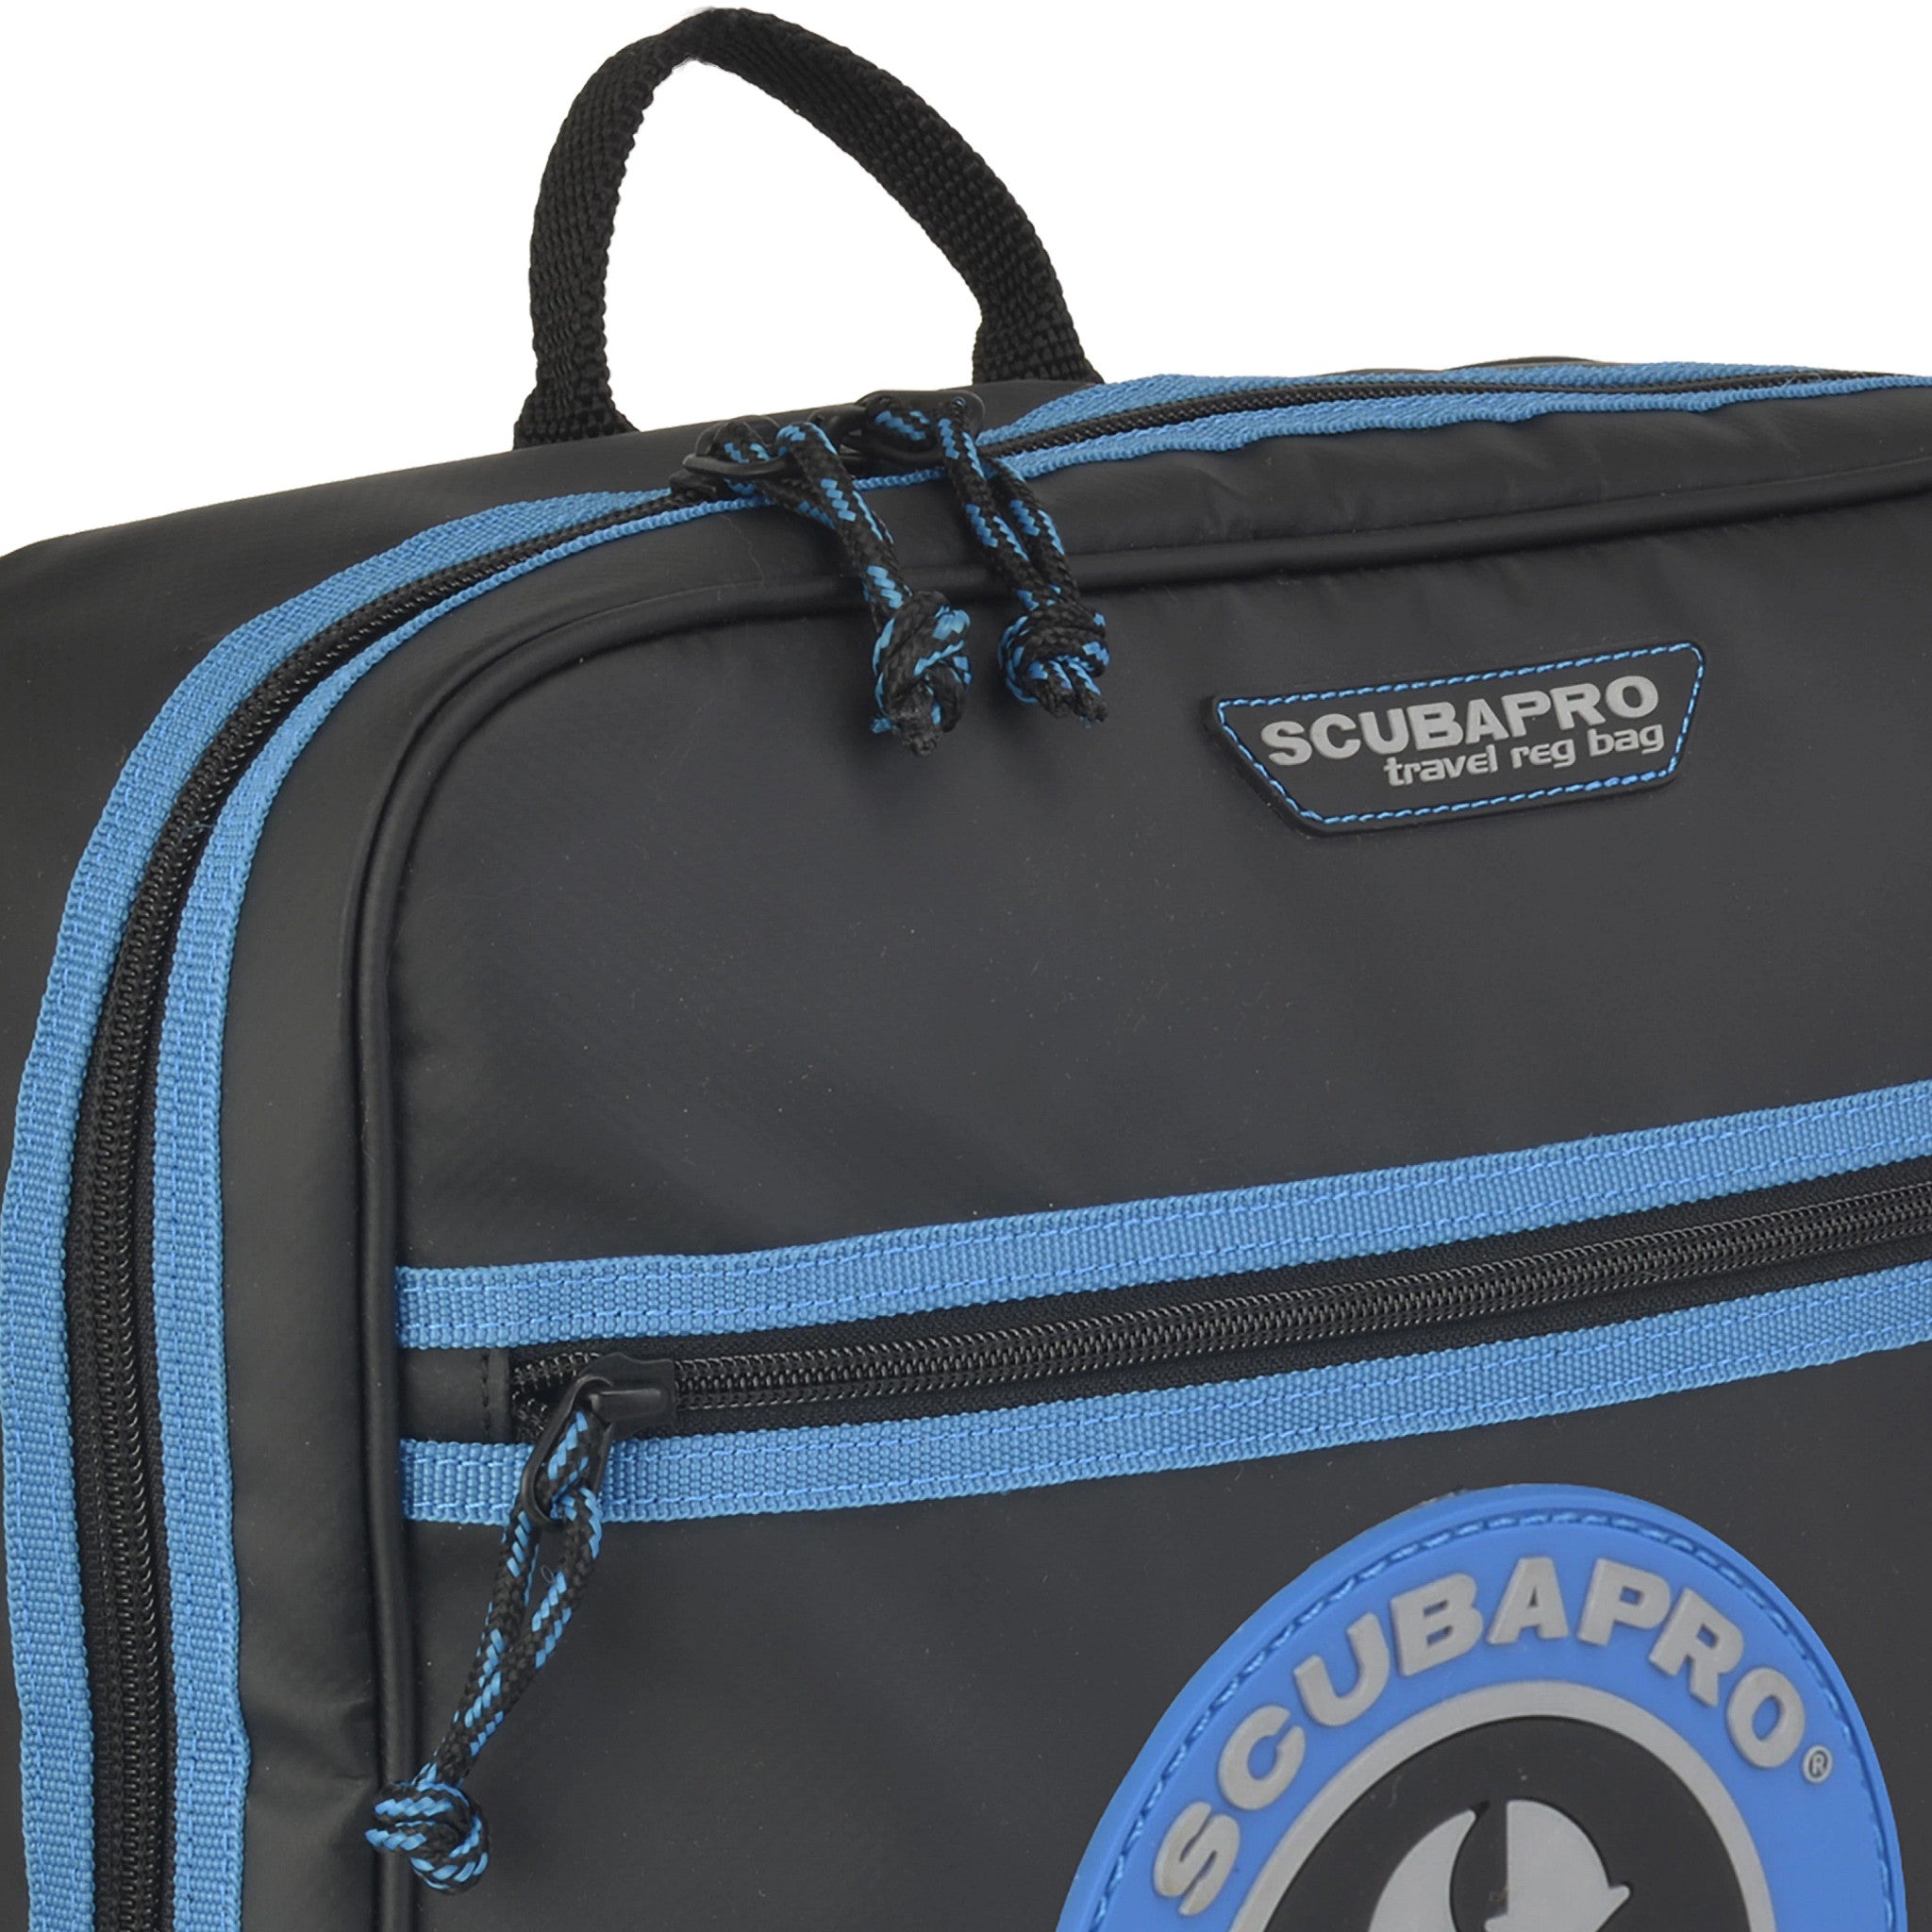 Used ScubaPro Dive Regulator Vintage Travel Bag